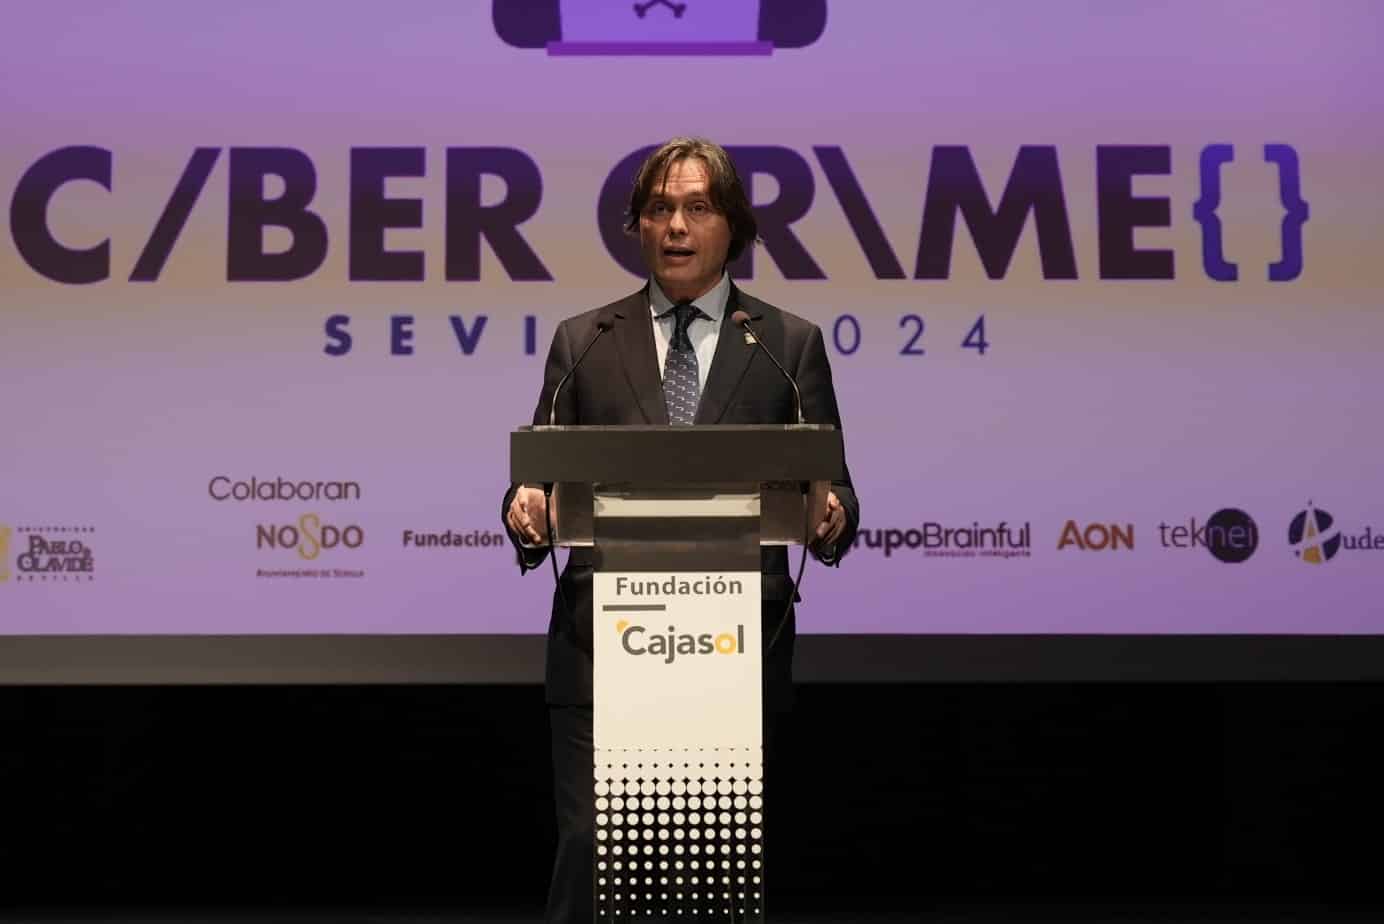 Antonio Pulido y Félix Bolaños inauguran CyberCrime Sevilla, Congreso Internacional sobre Ciberdelincuencia en Sevilla